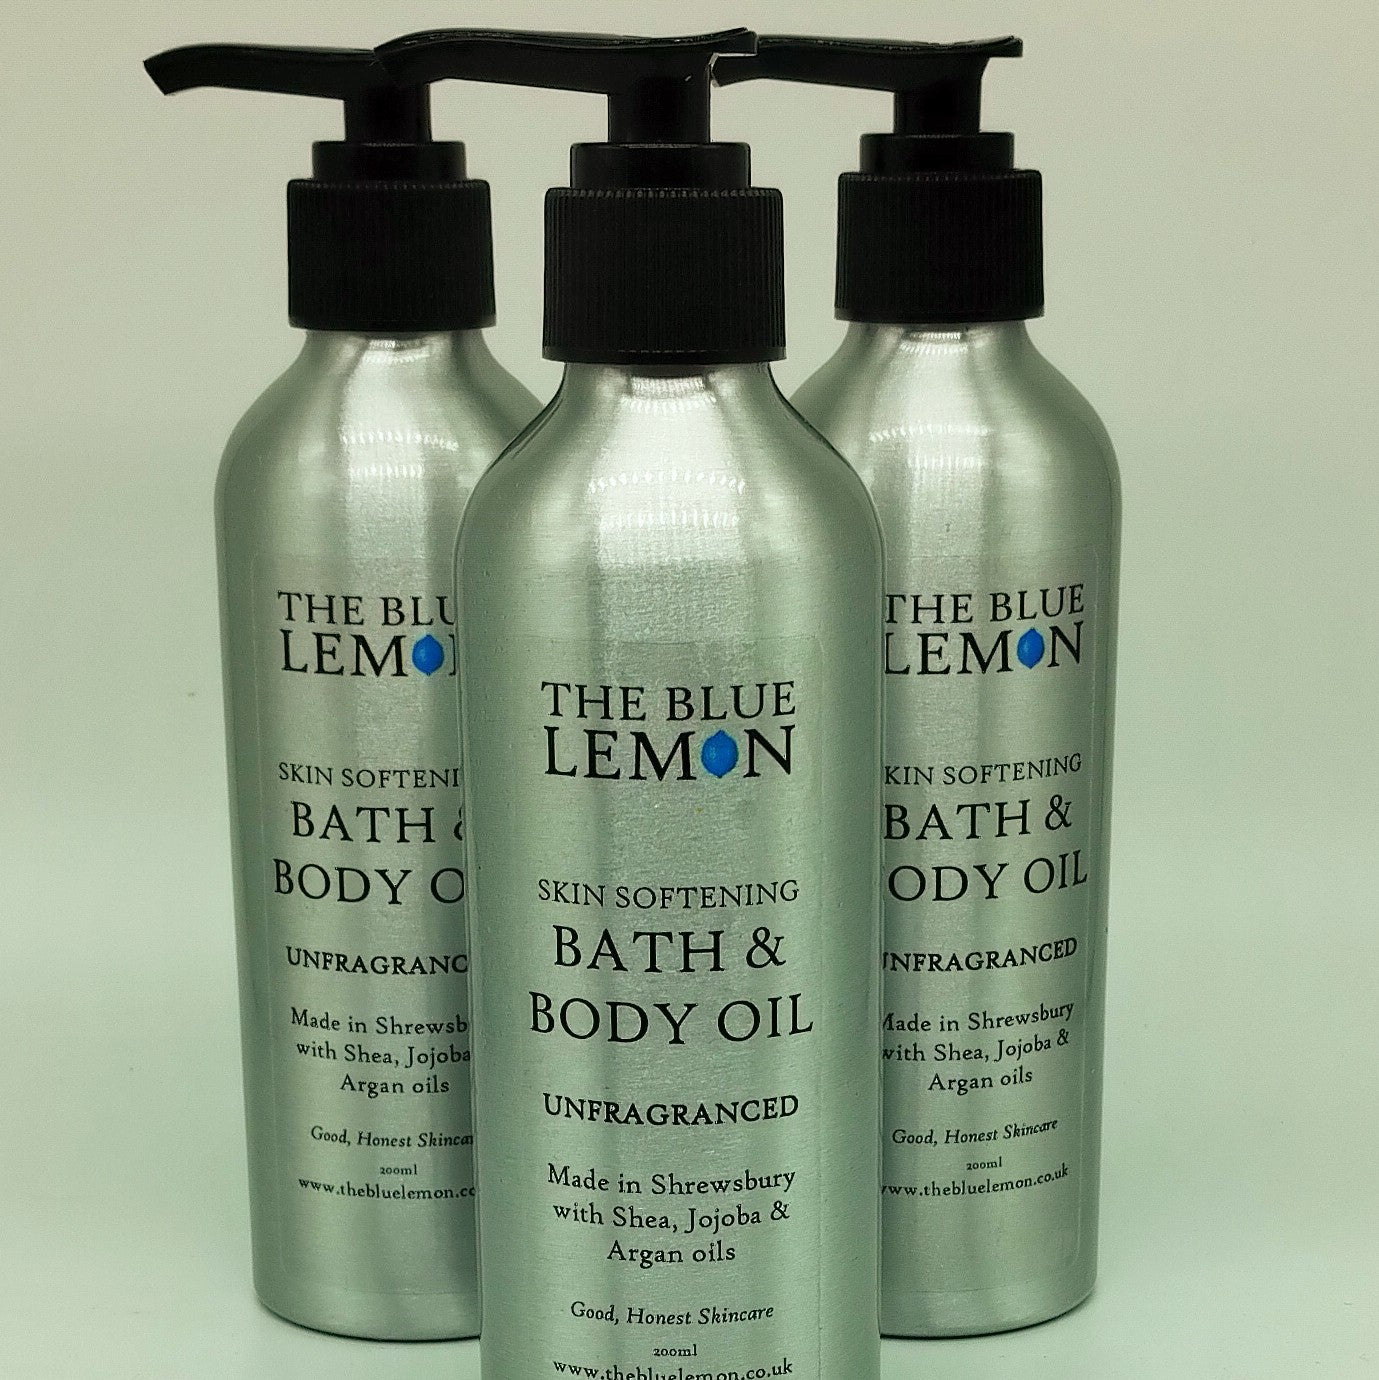 Bath and Body Oil